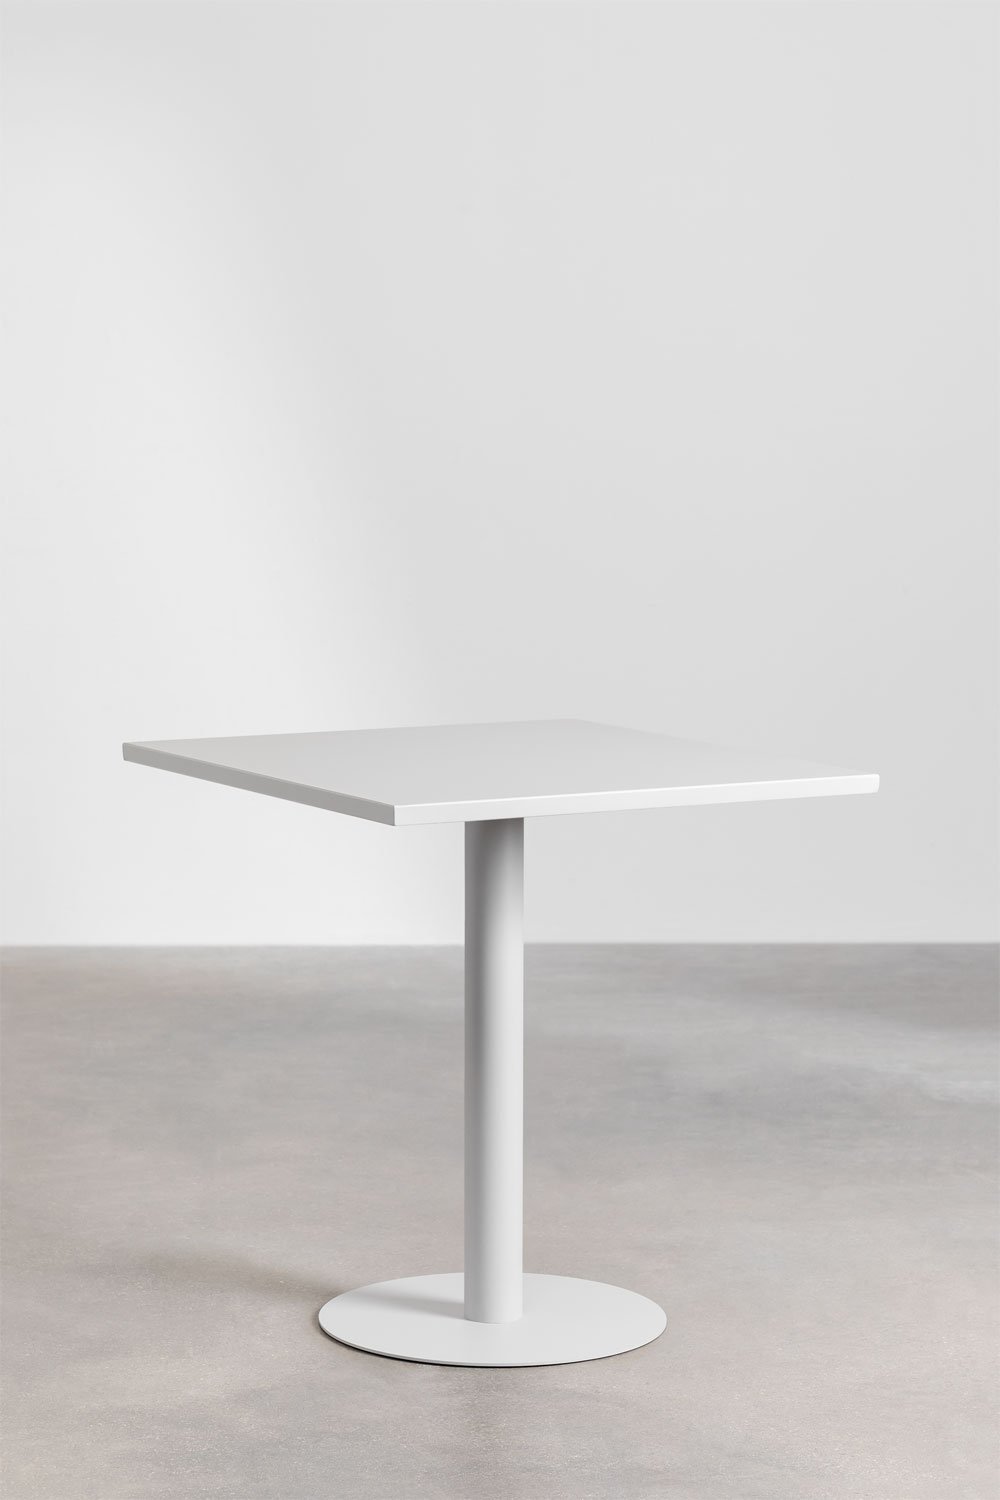 Table à manger carrée en métal (70x70 cm) Mizzi, image de la galerie 1